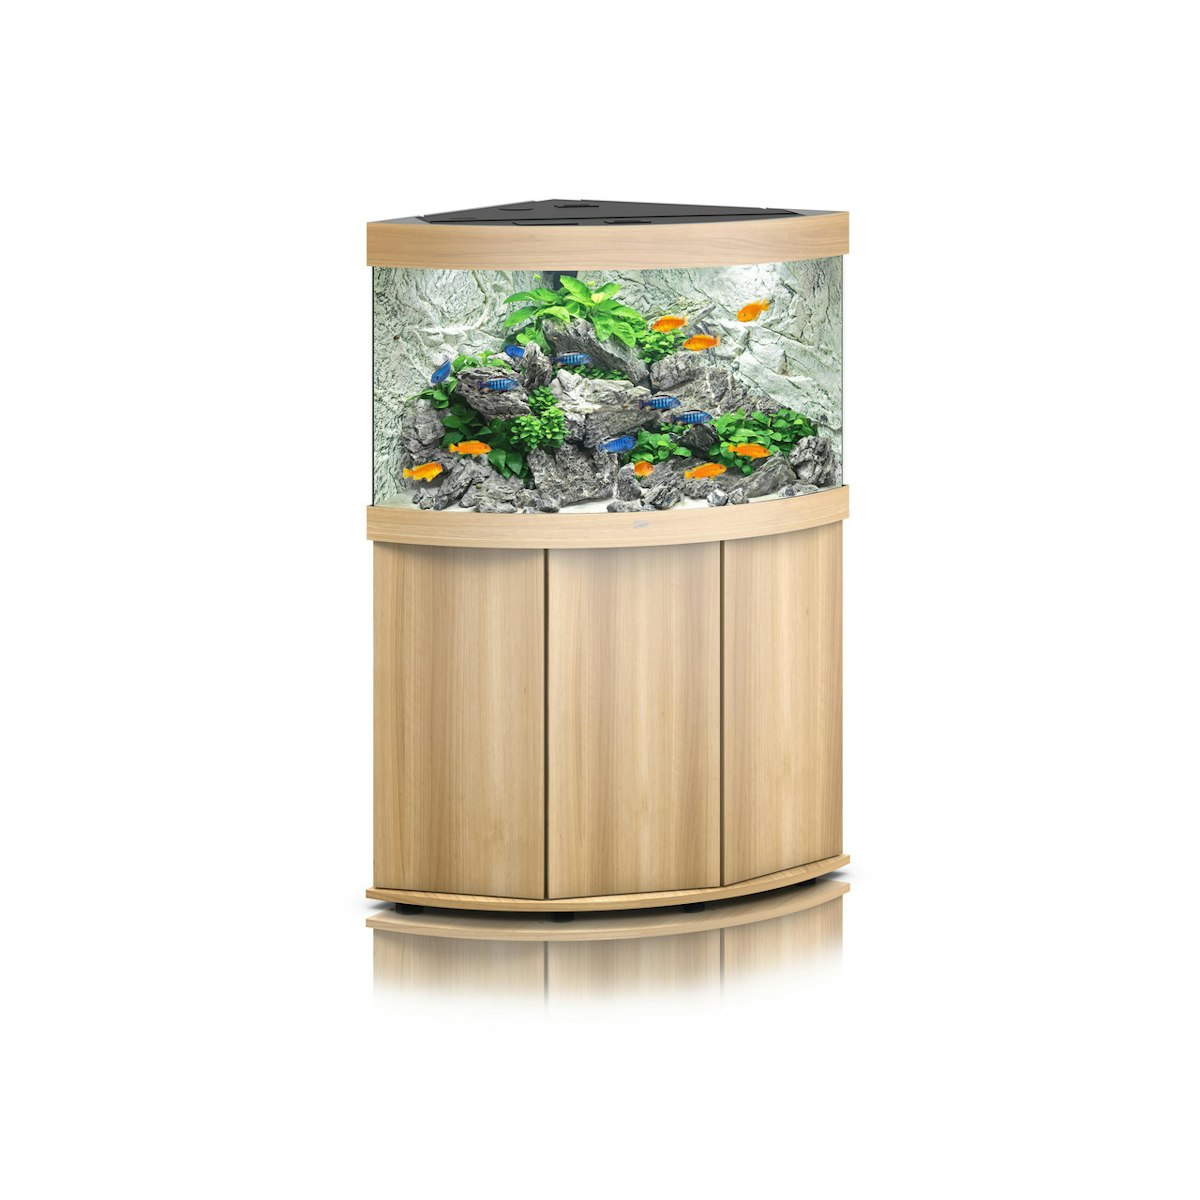 JUWEL Trigon 190 LED Aquarium mit Unterschrank helles Holz